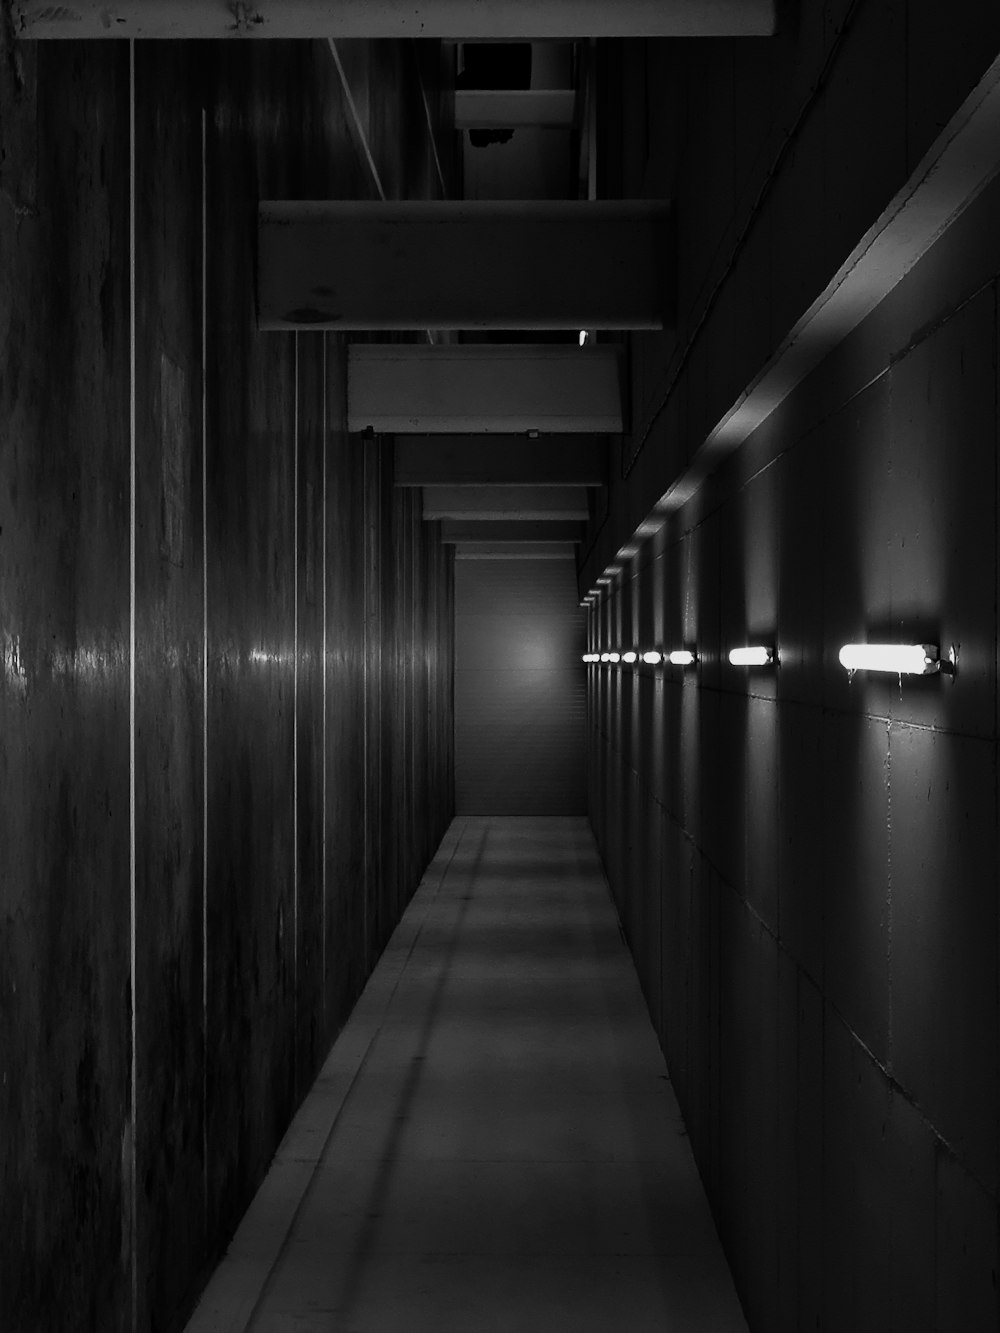 Foto in scala di grigi del corridoio con le luci